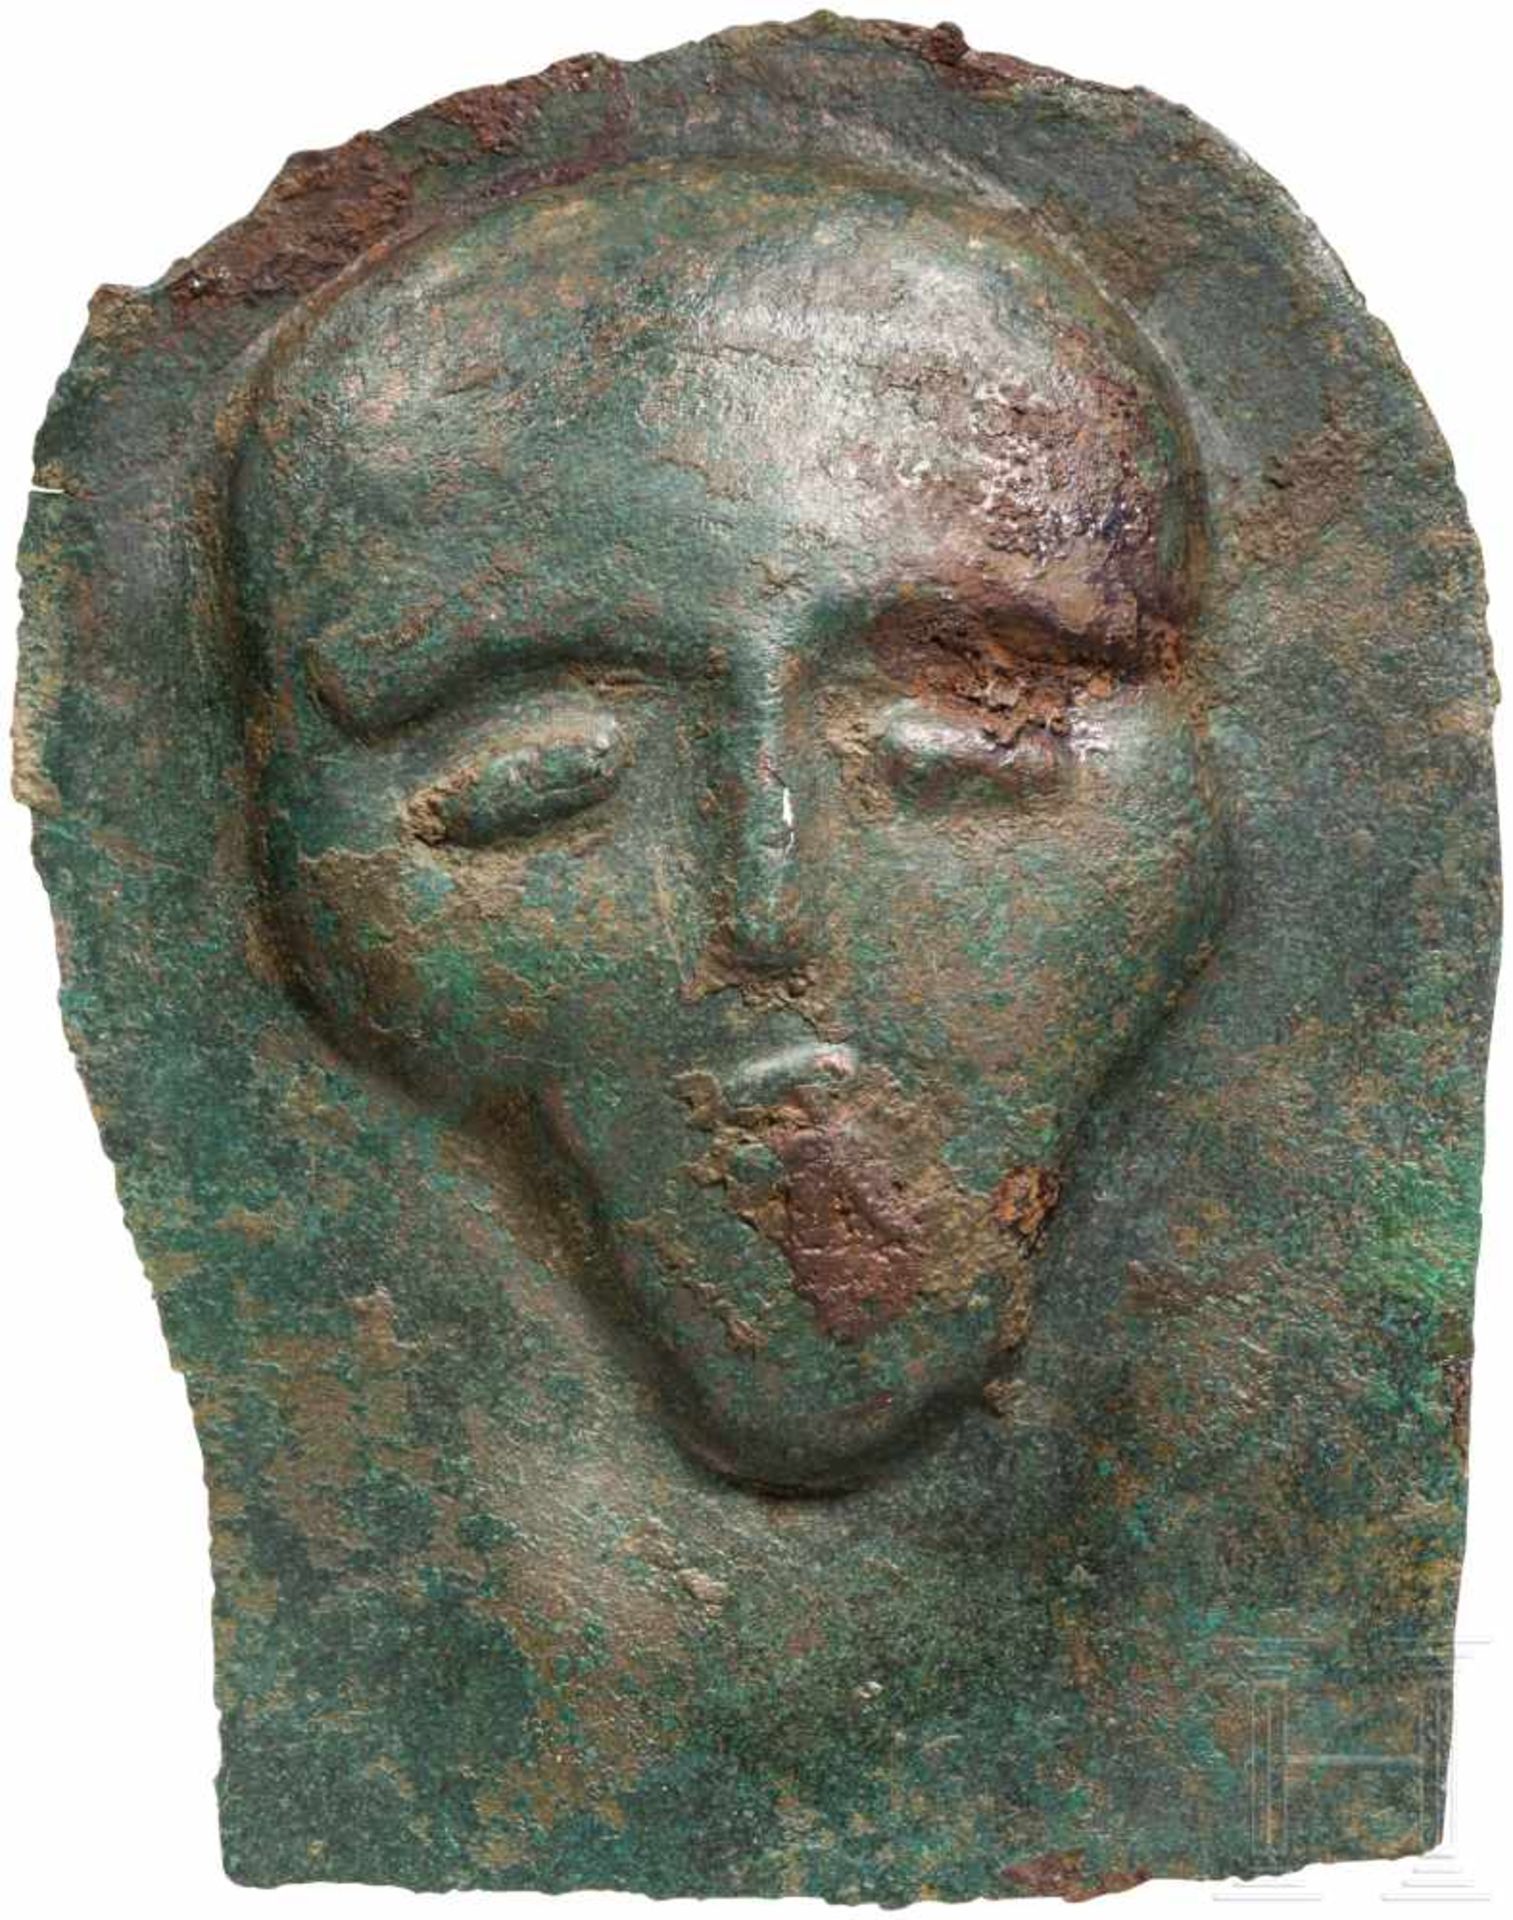 Votivblech mit Kopf, urartäisch, 8. Jhdt. v. Chr.Bronzenes Blech mit von hinten herausgetriebenem